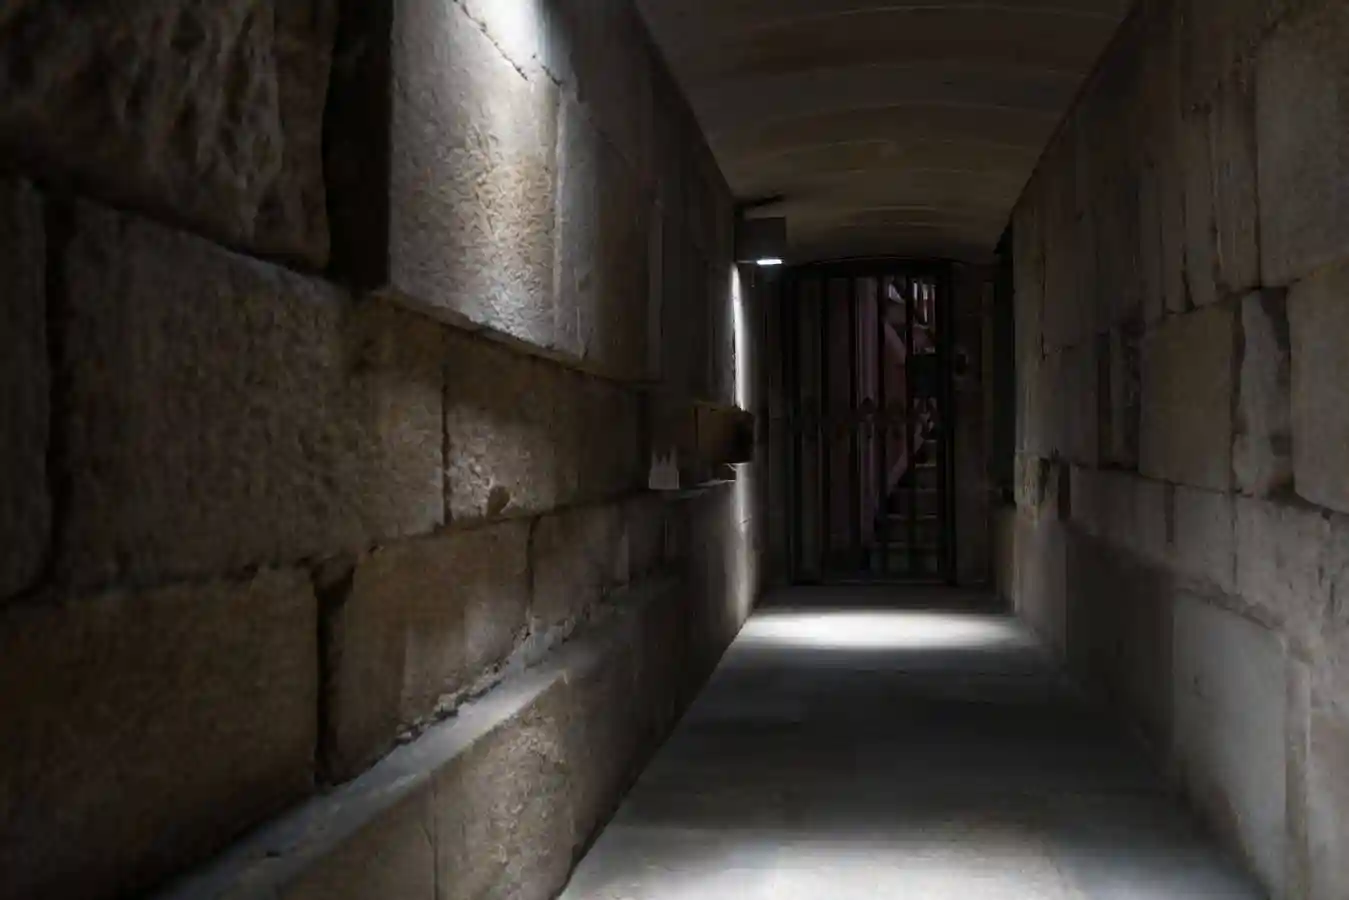 Los pasillos laterales de la cripta permiten diferenciar las piedras romanas originales de las modificaciones posteriores